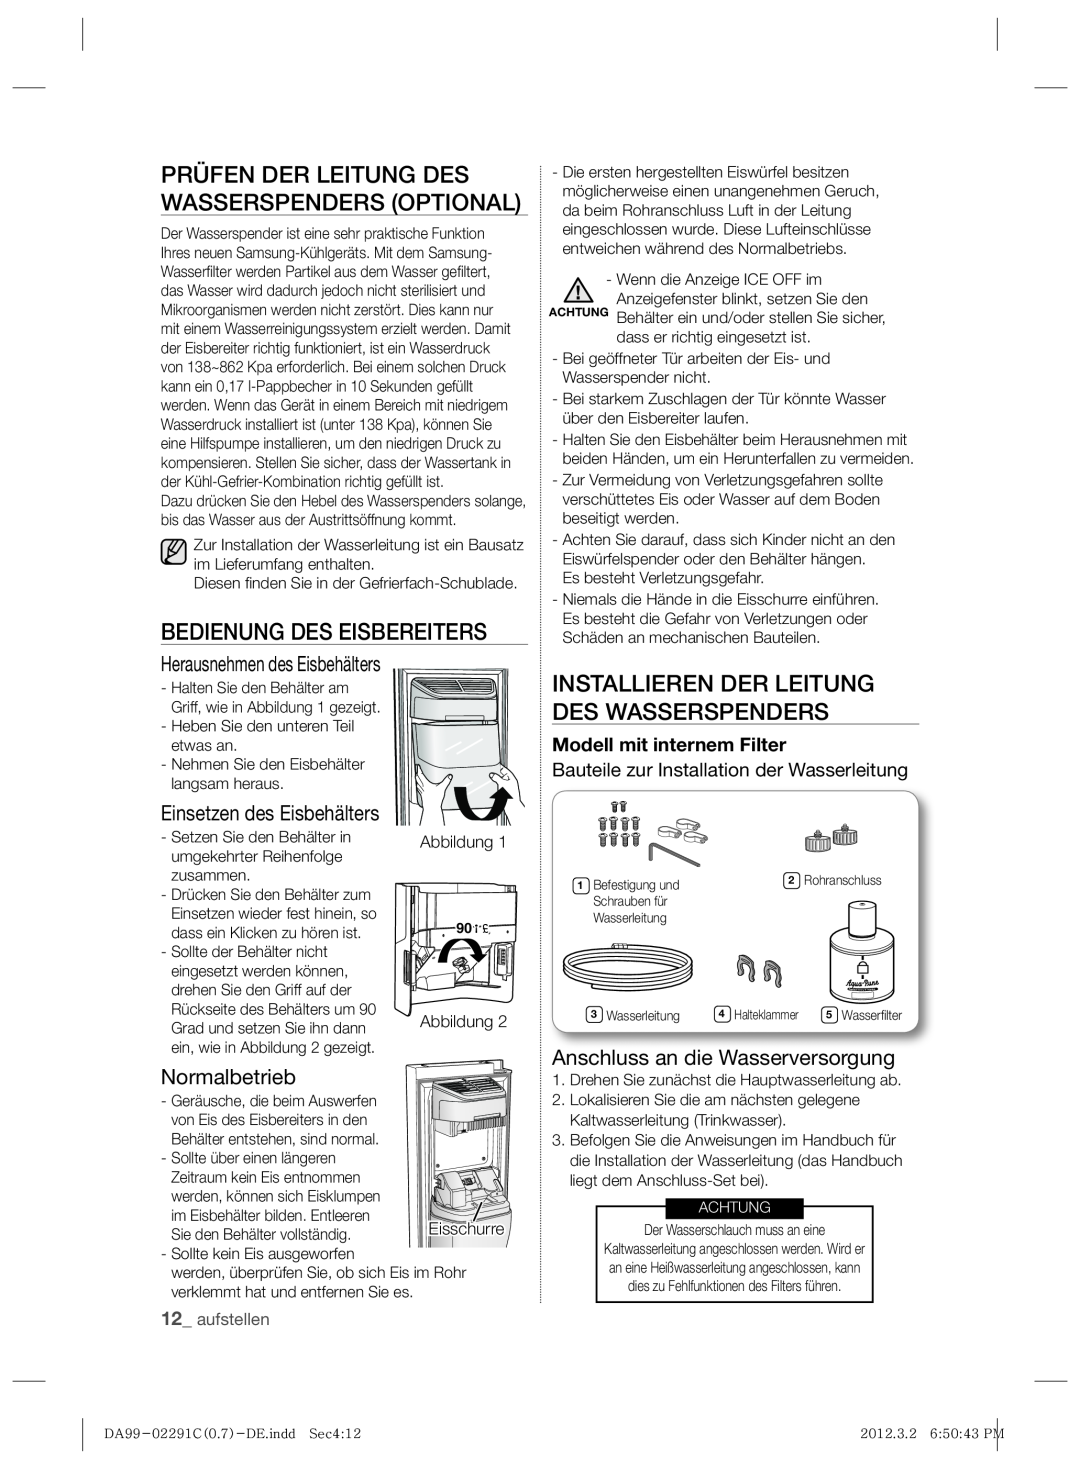 Samsung RSH7ZNRS1/XEF manual Prüfen Der Leitung Des Wasserspenders Optional, Bedienung Des Eisbereiters, Normalbetrieb 